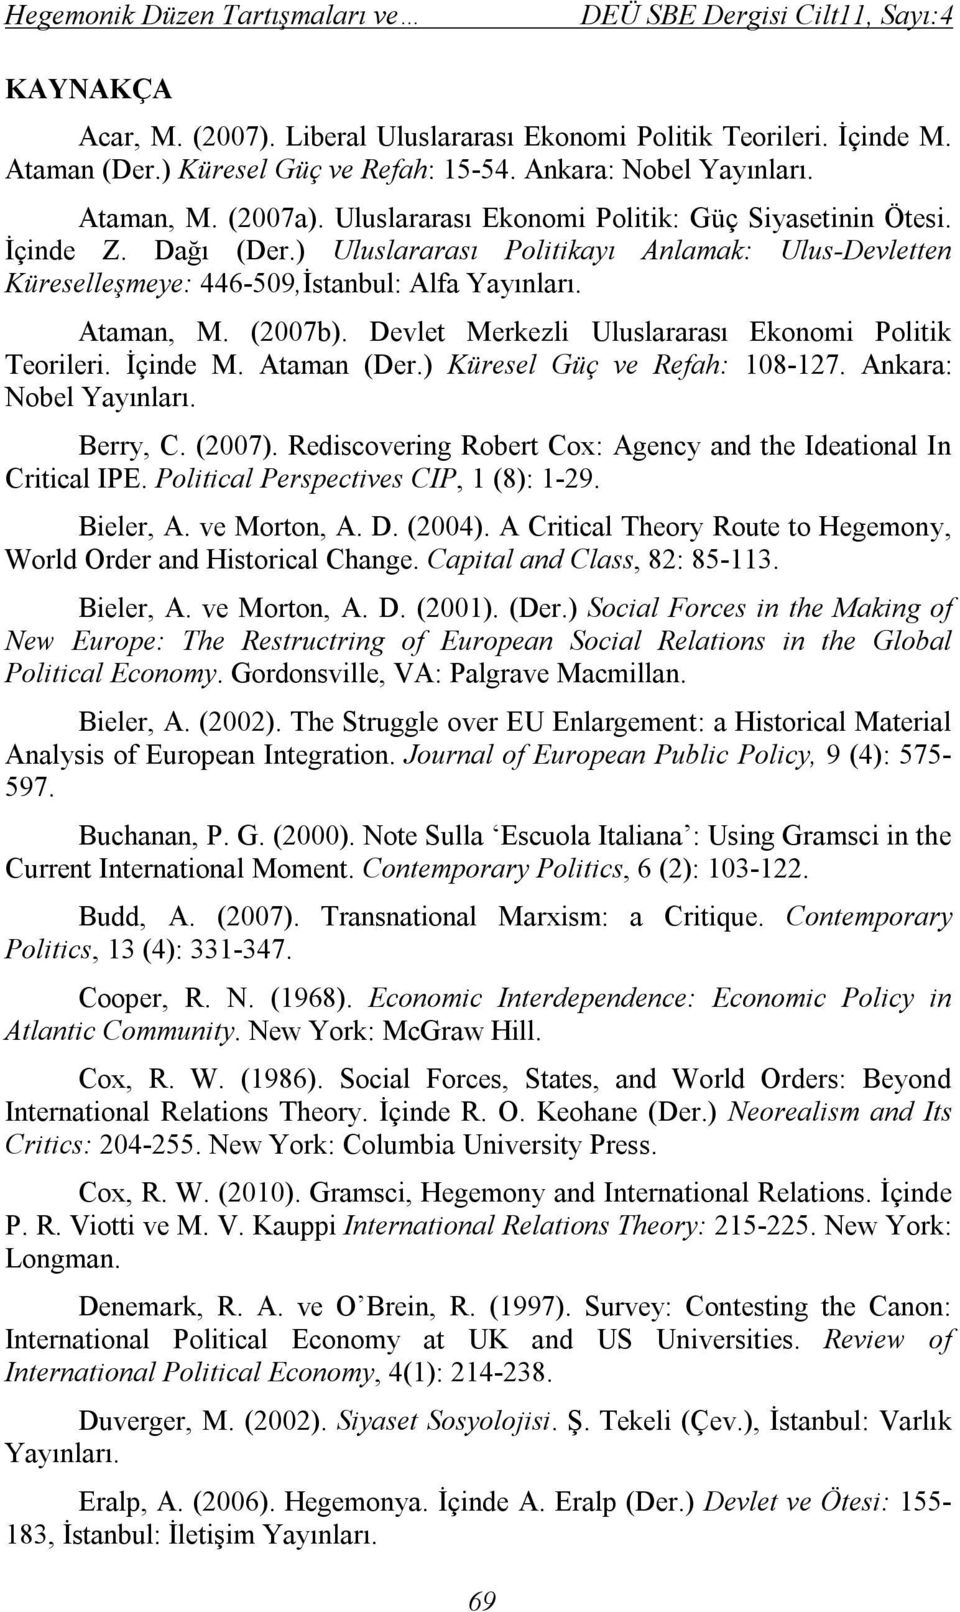 (2007b). Devlet Merkezli Uluslararası Ekonomi Politik Teorileri. İçinde M. Ataman (Der.) Küresel Güç ve Refah: 108-127. Ankara: Nobel Yayınları. Berry, C. (2007).